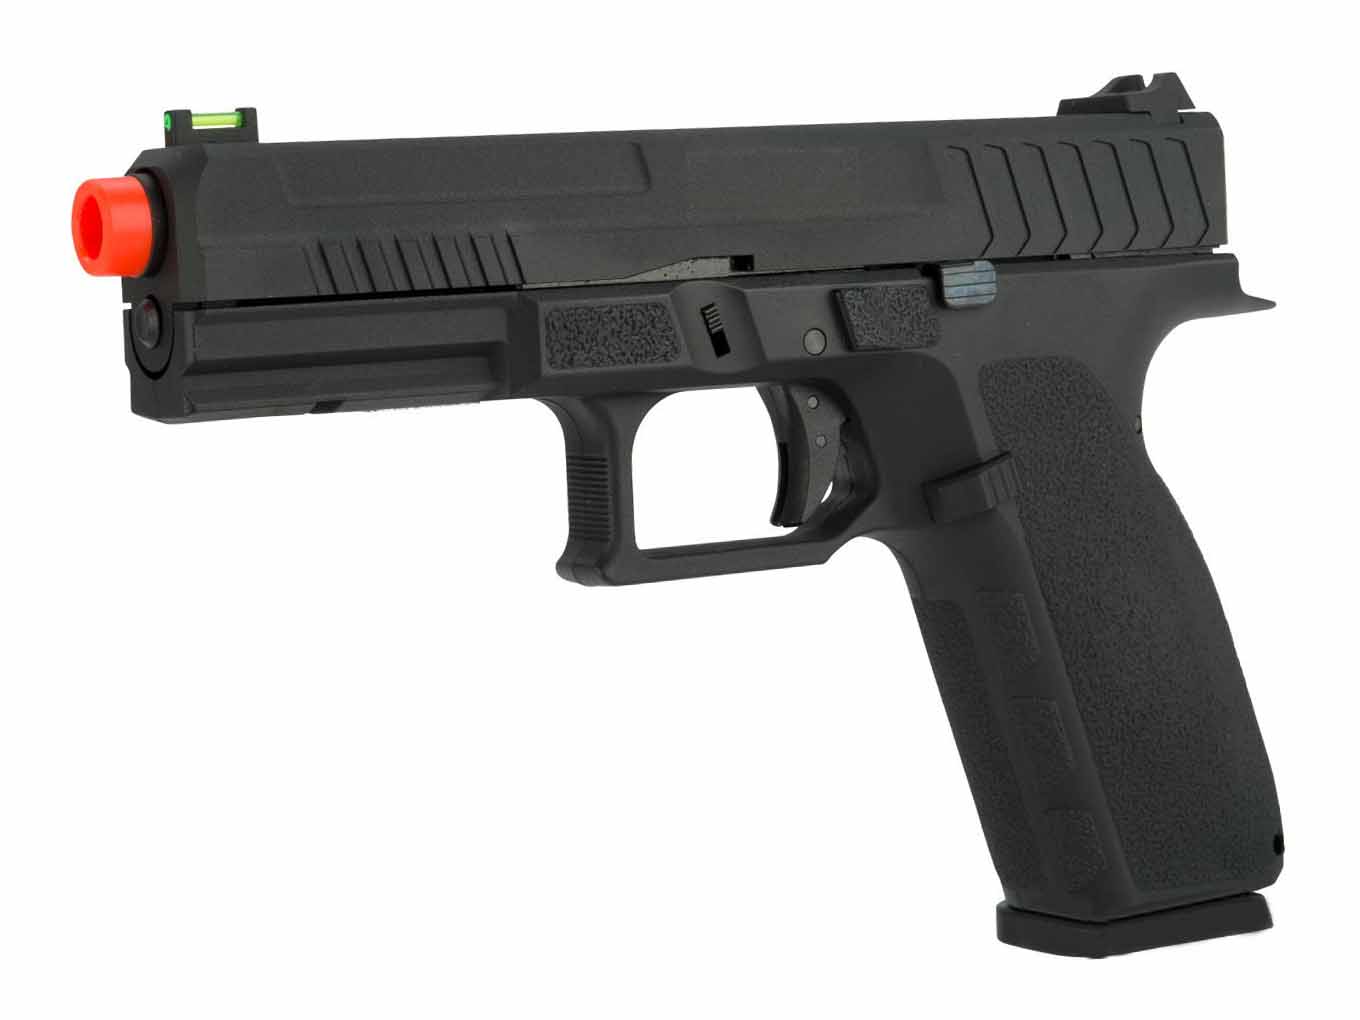 KJW KP-13 Full Size Polymer Frame CO2 Blowback Pistol Black